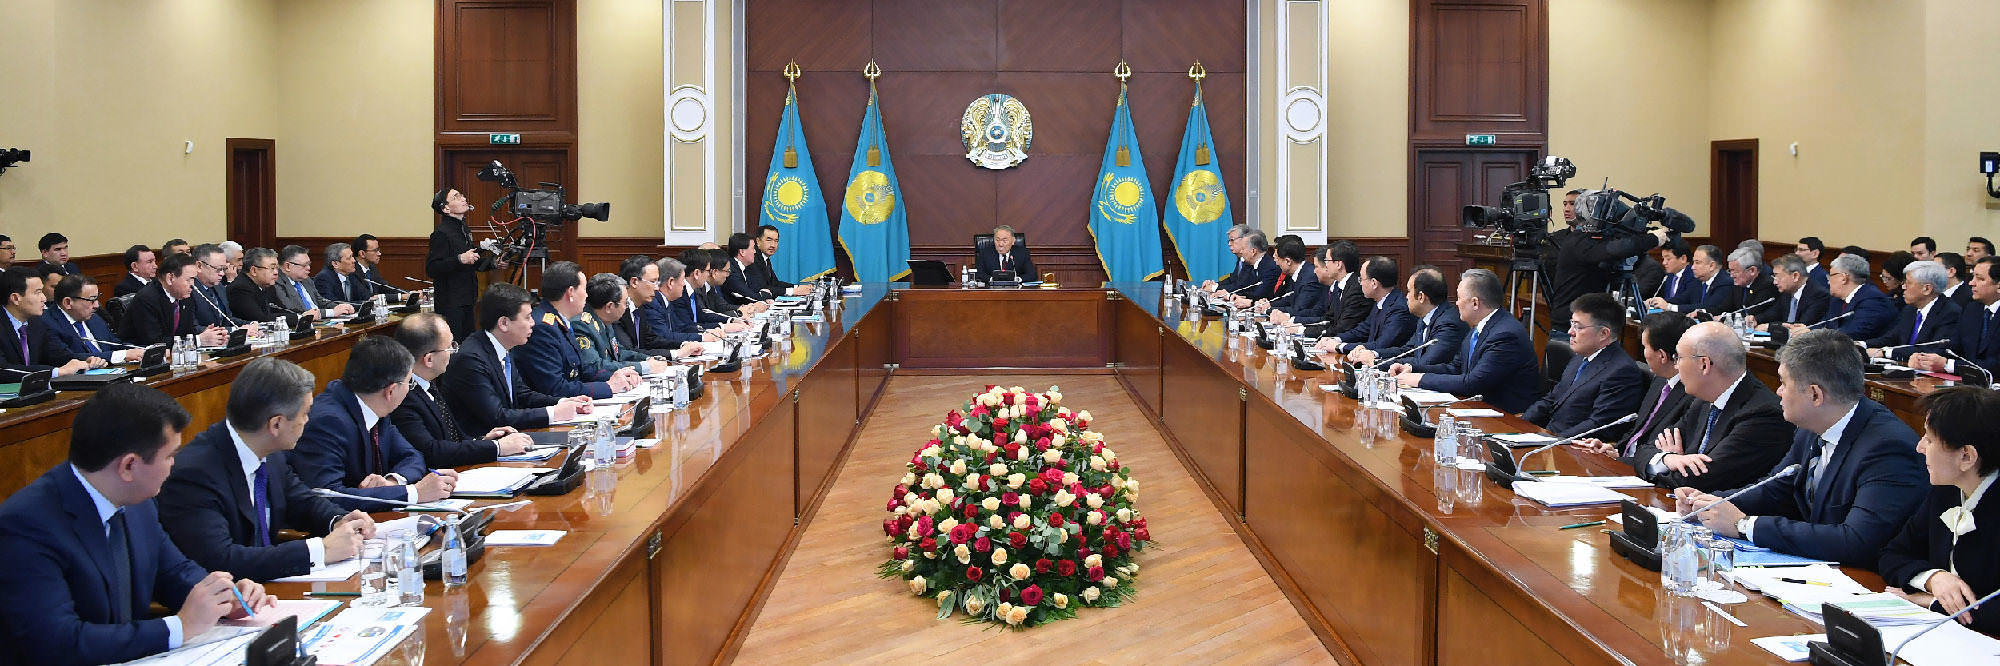 Расширенное заседание Правительства под председательством Нурсултана Назарбаева